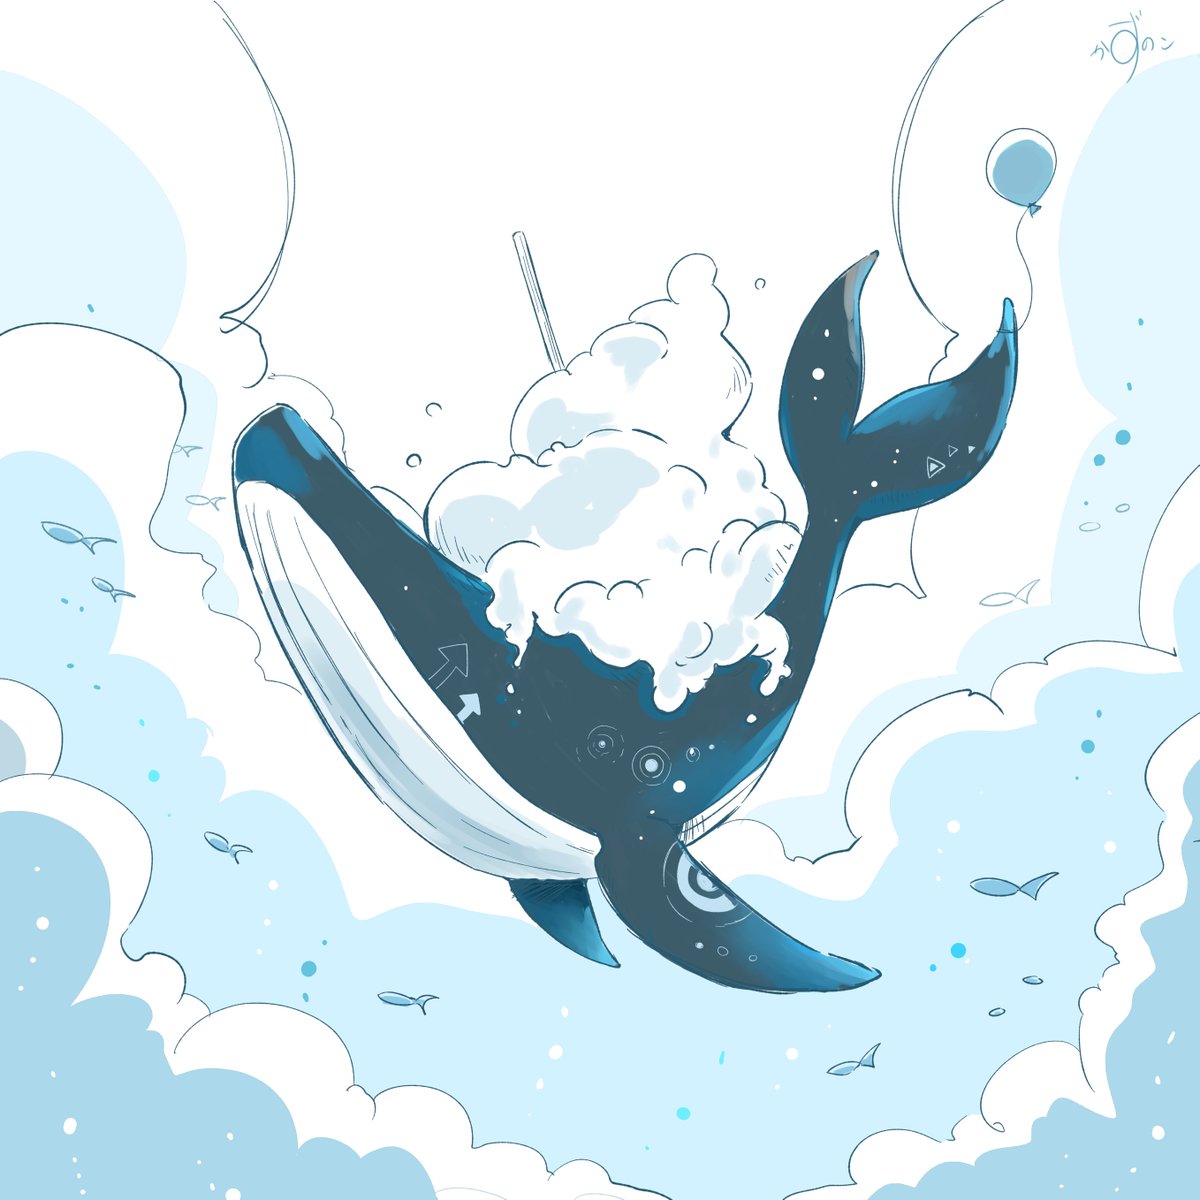 no humans whale fish bubble animal focus artist name cloud  illustration images